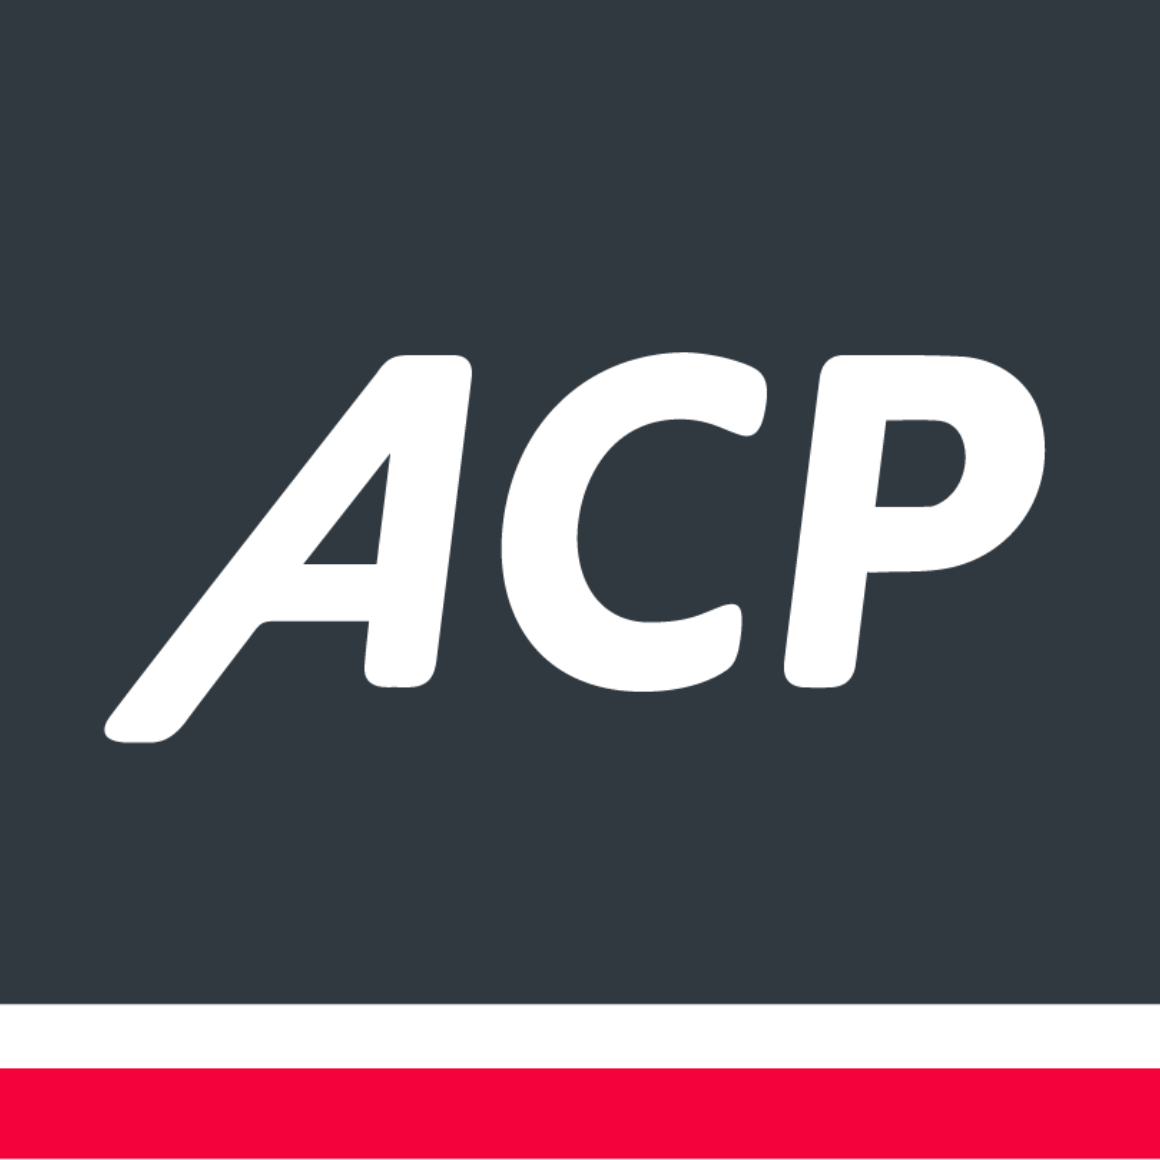 Acp logo rgb